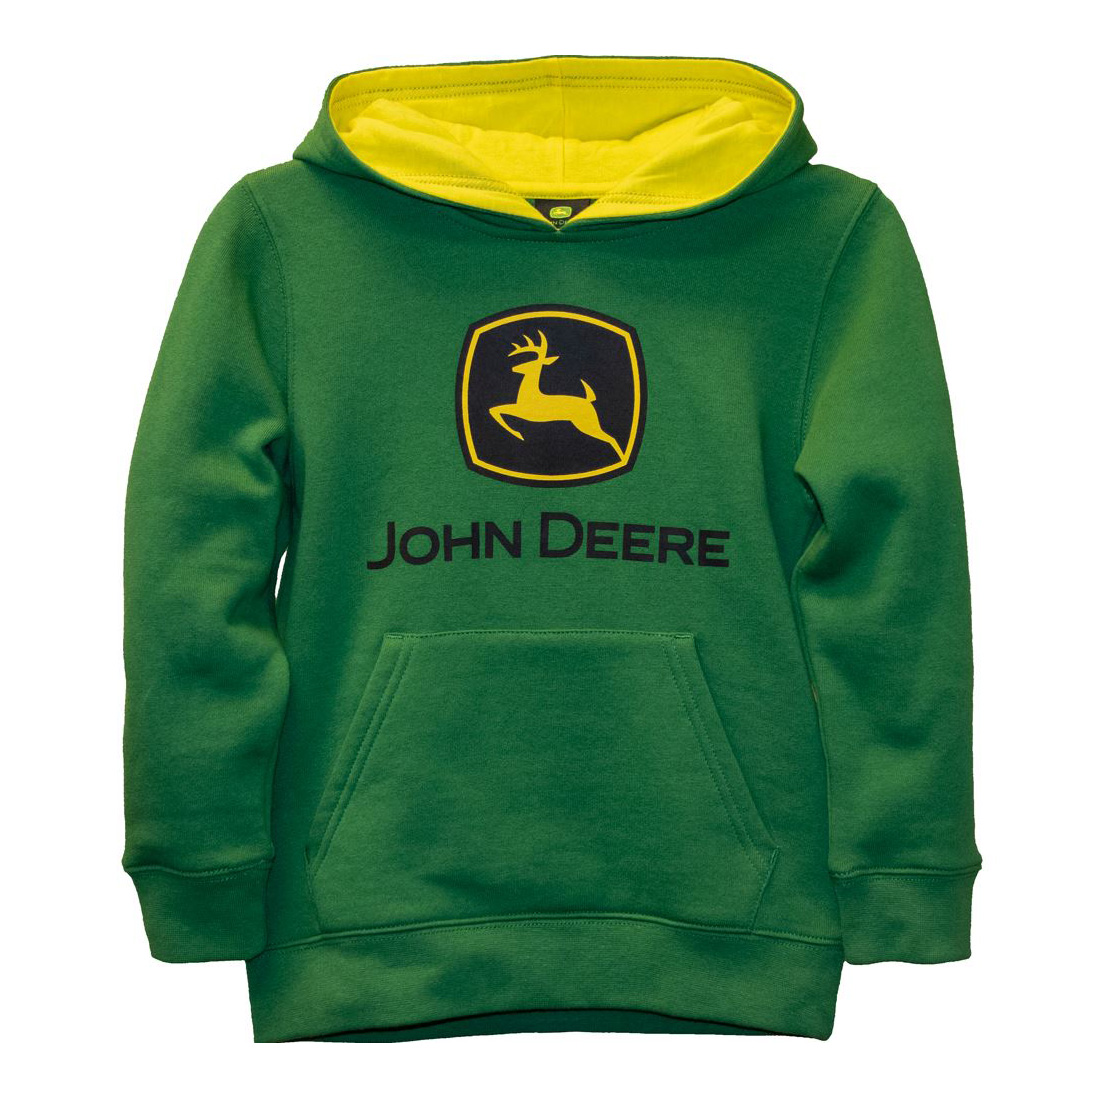 John Deere Kids Hooded Sweatshirt - Ben Burgess